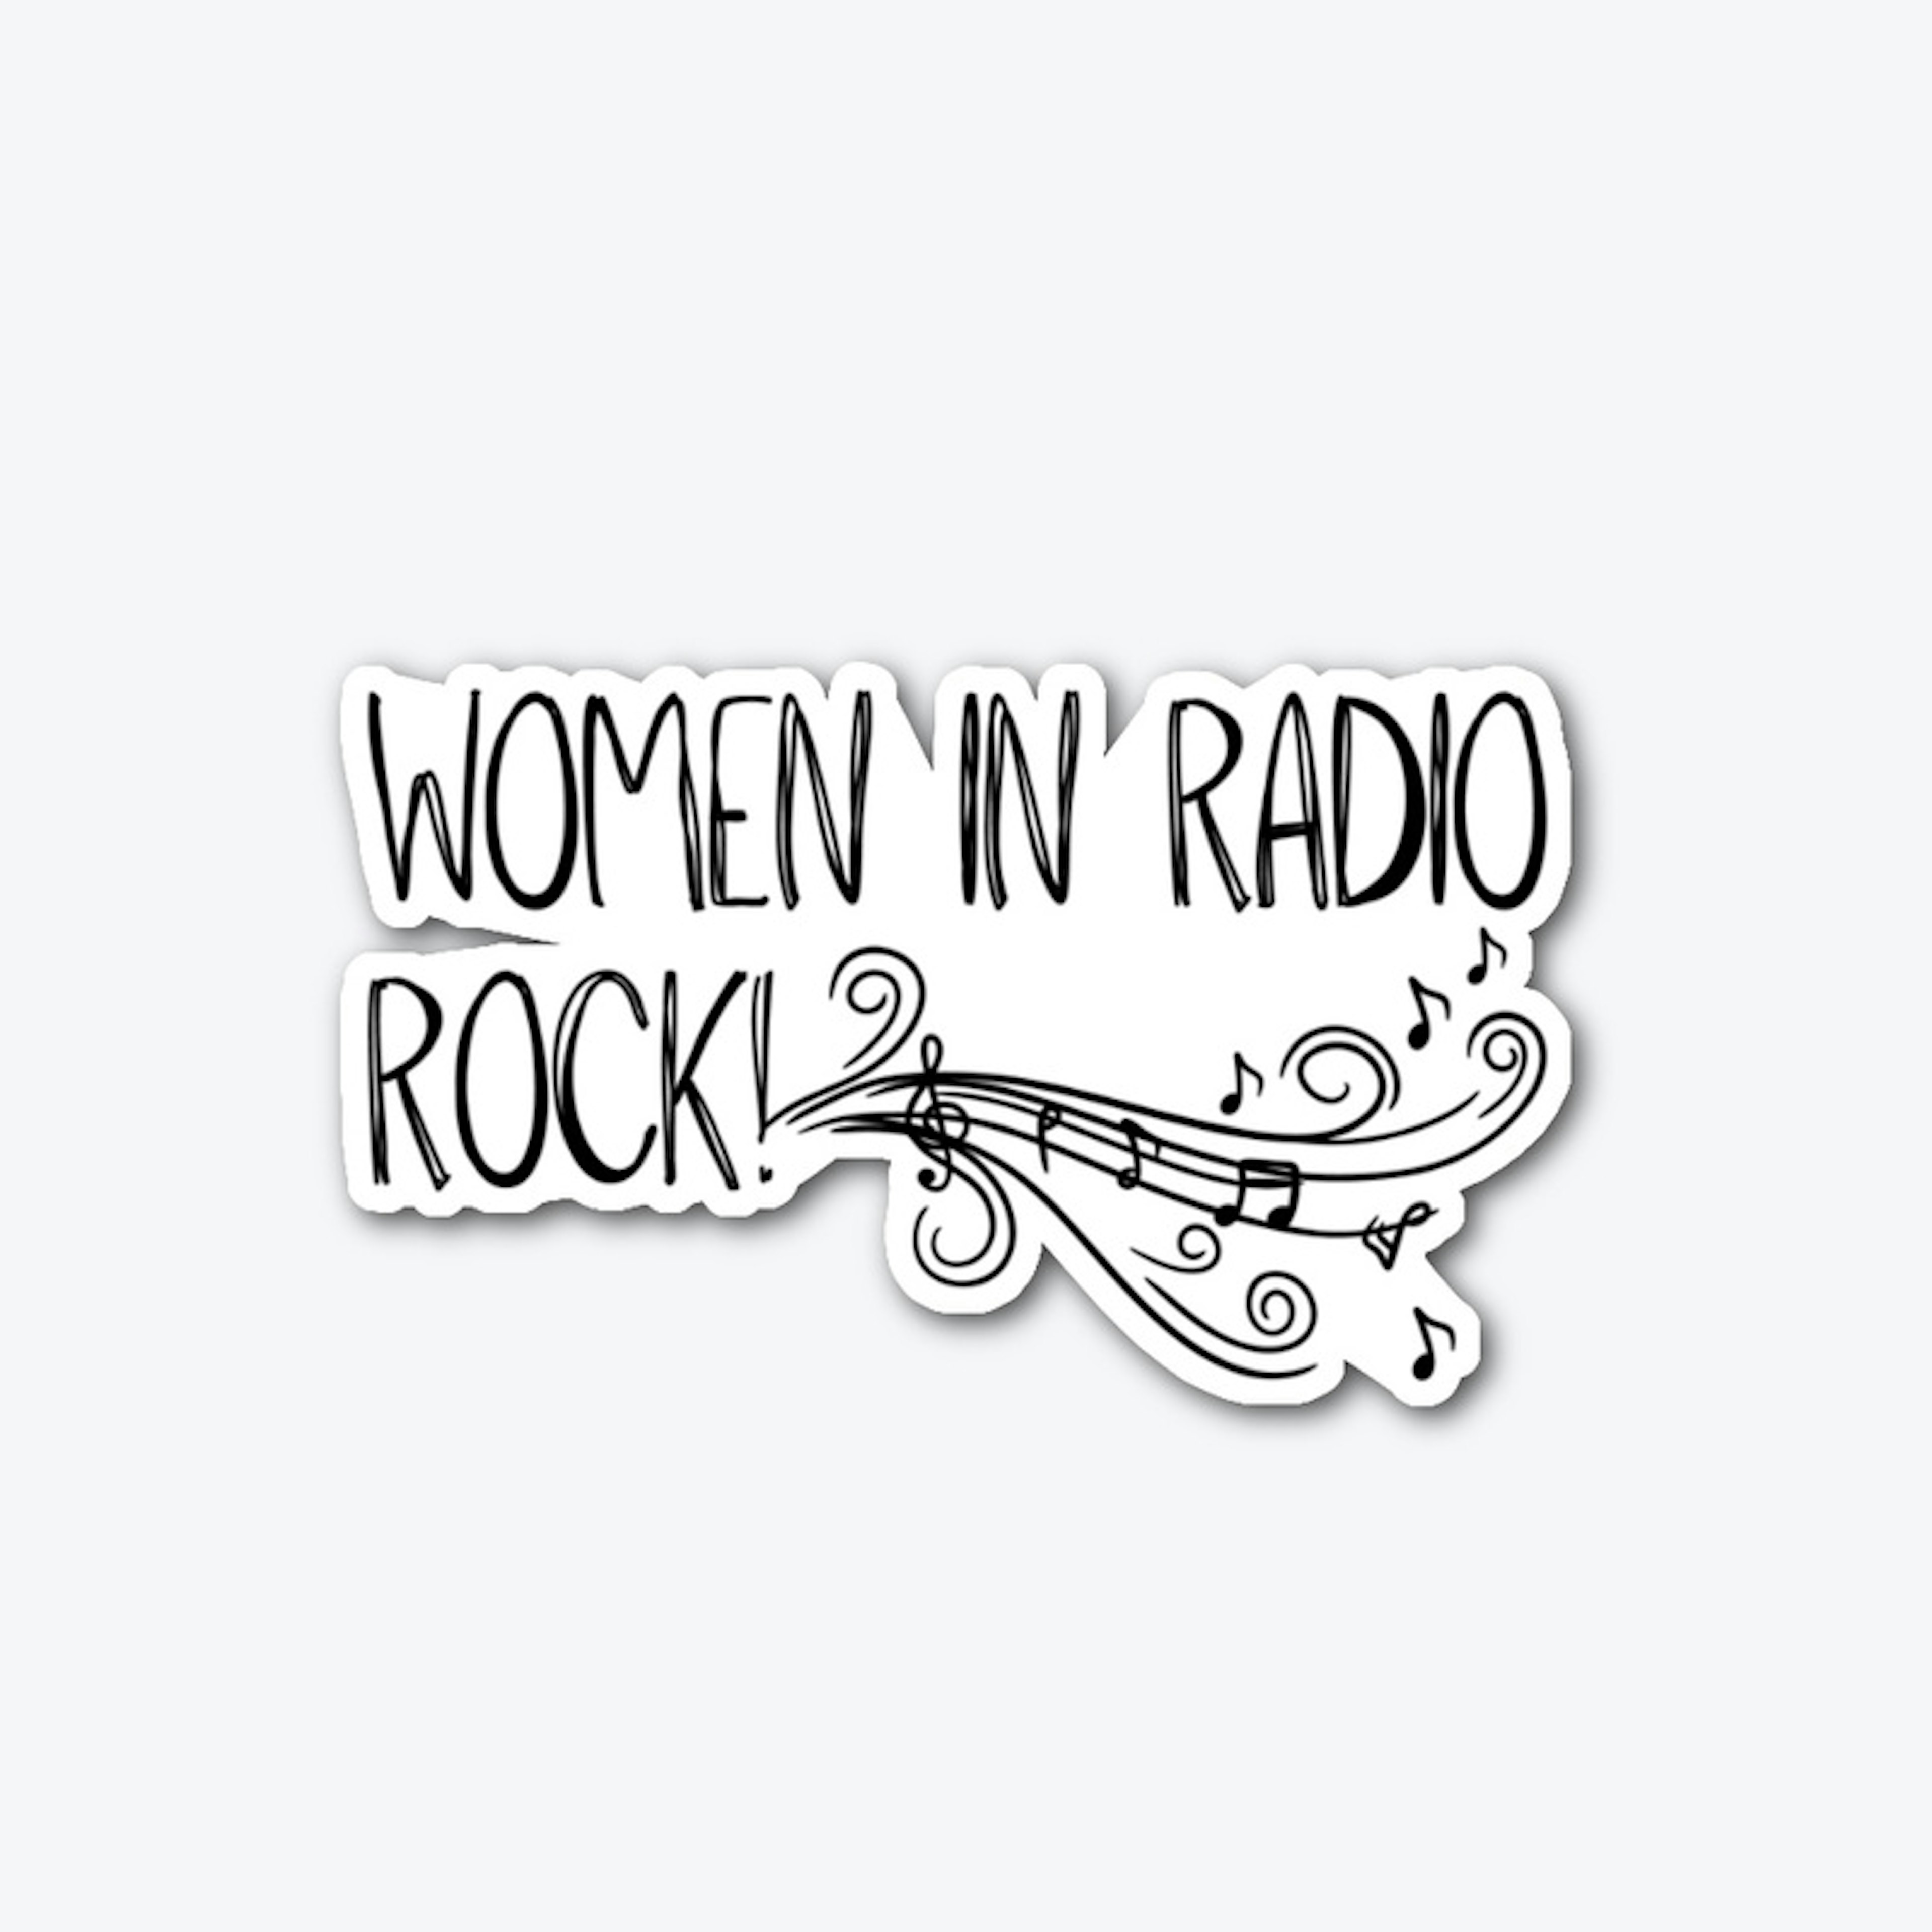 Women in Radio Rock!